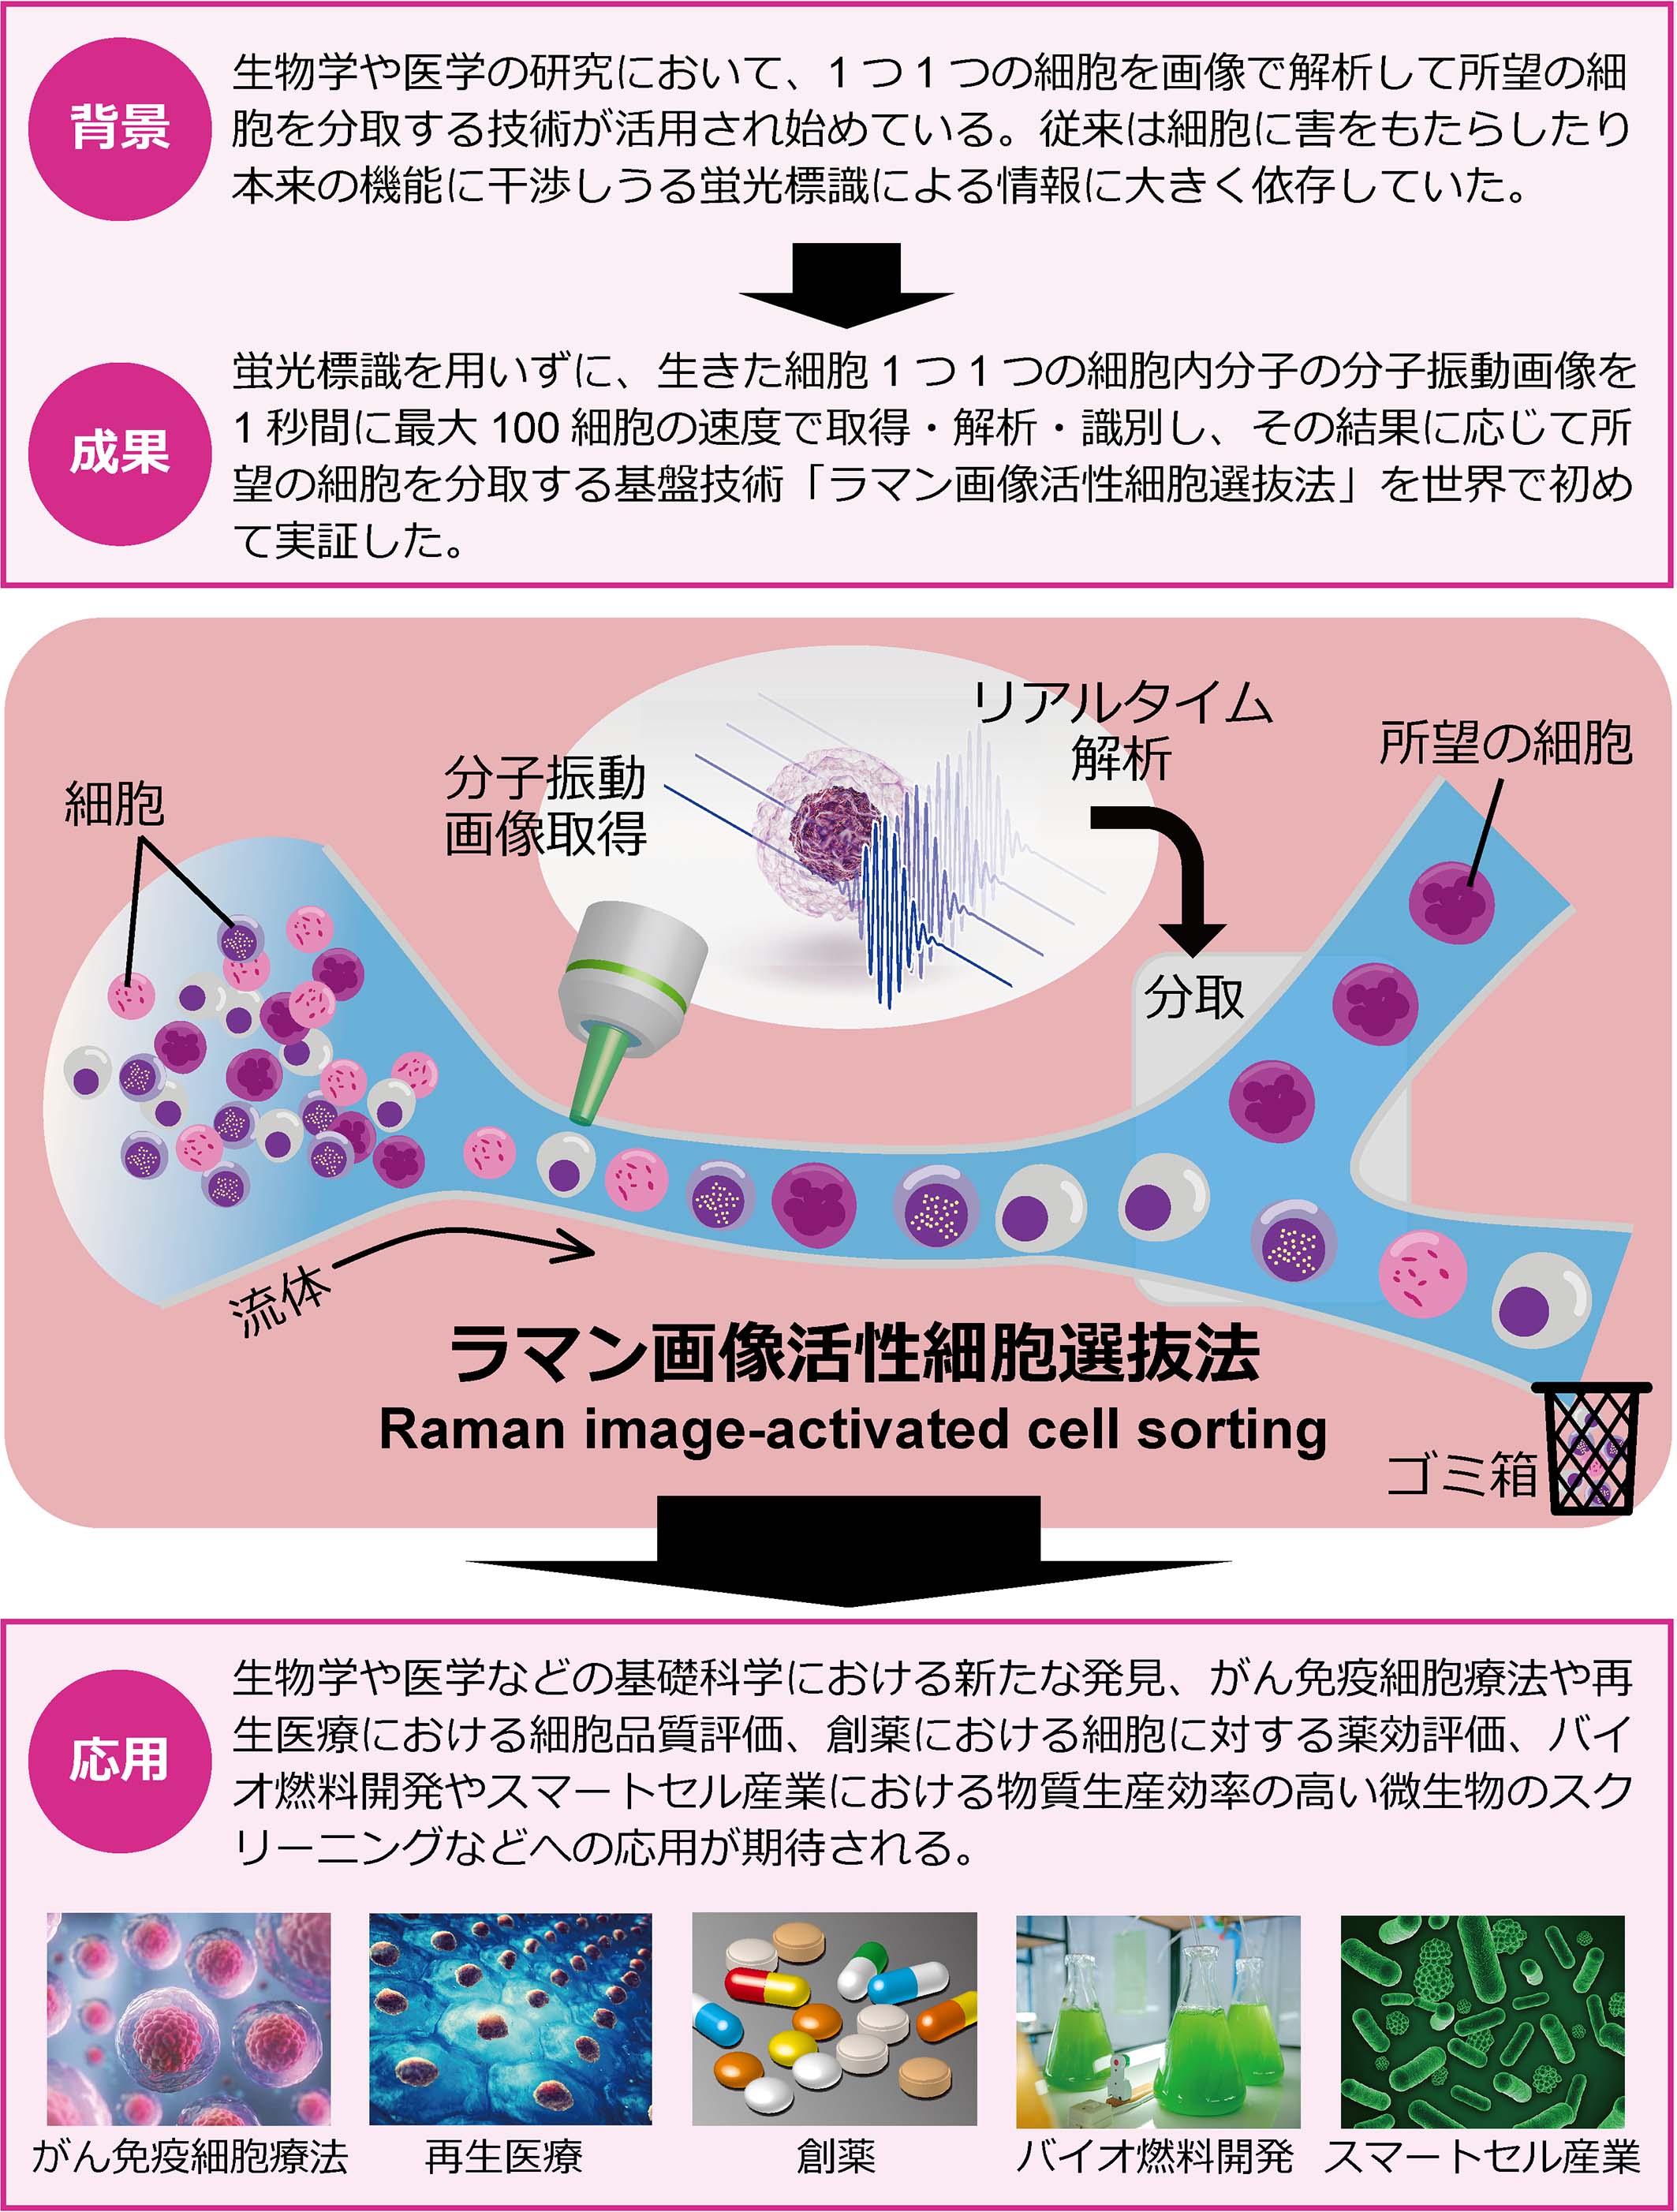 細胞をありのままの姿で超高速選抜 世界初のラマン画像活性細胞選抜法を開発 東京大学 大学院理学系研究科 理学部